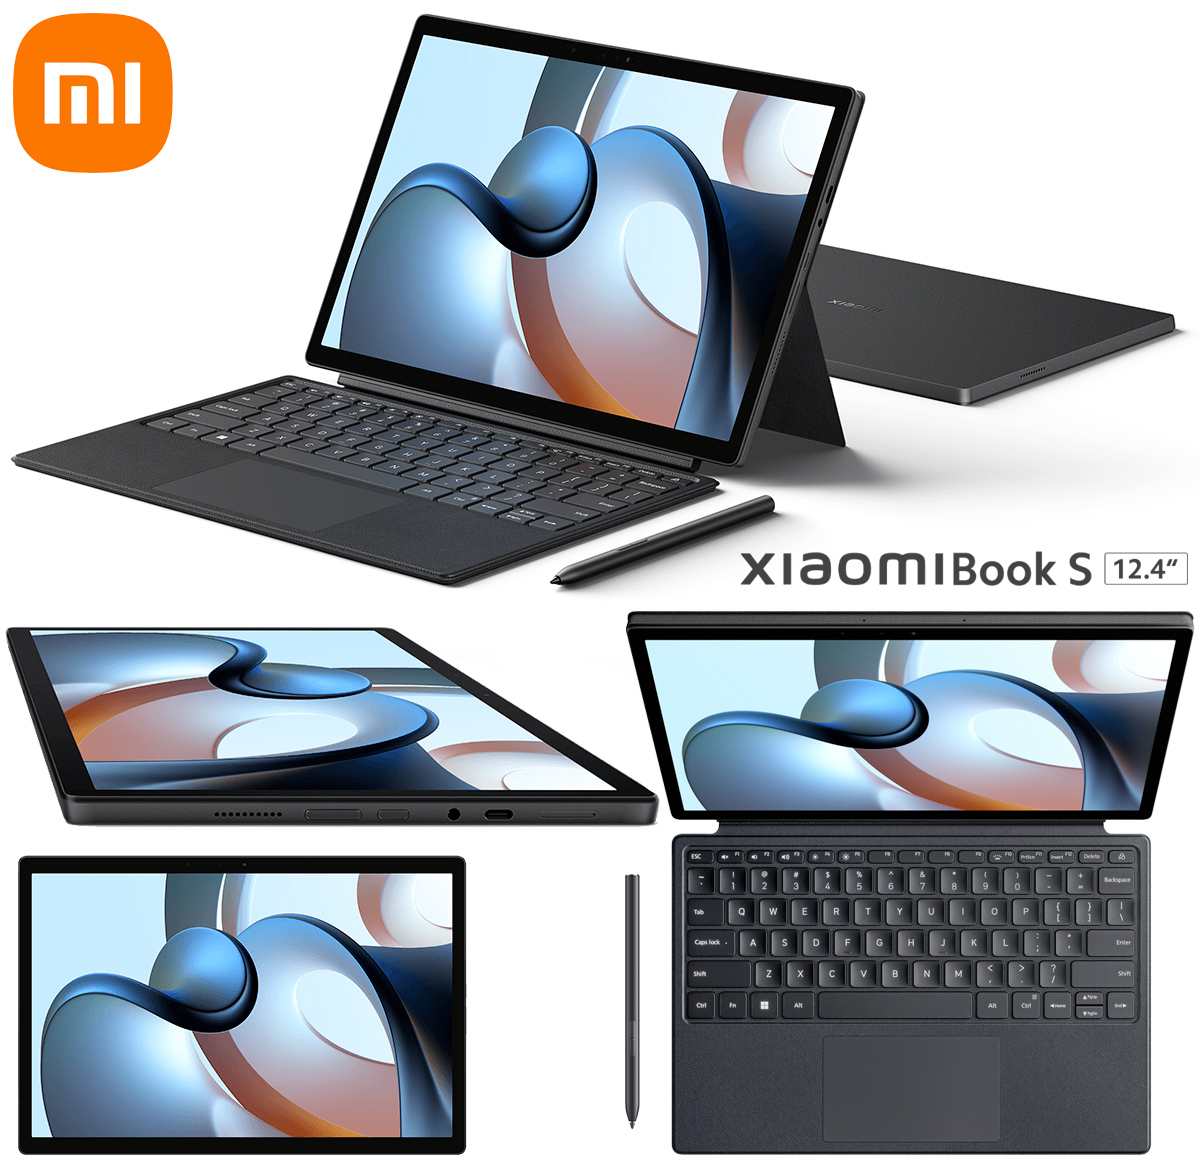 Xiaomi Book S 12.4 - Novo laptop/tablet 2-em-1 com Windows 11